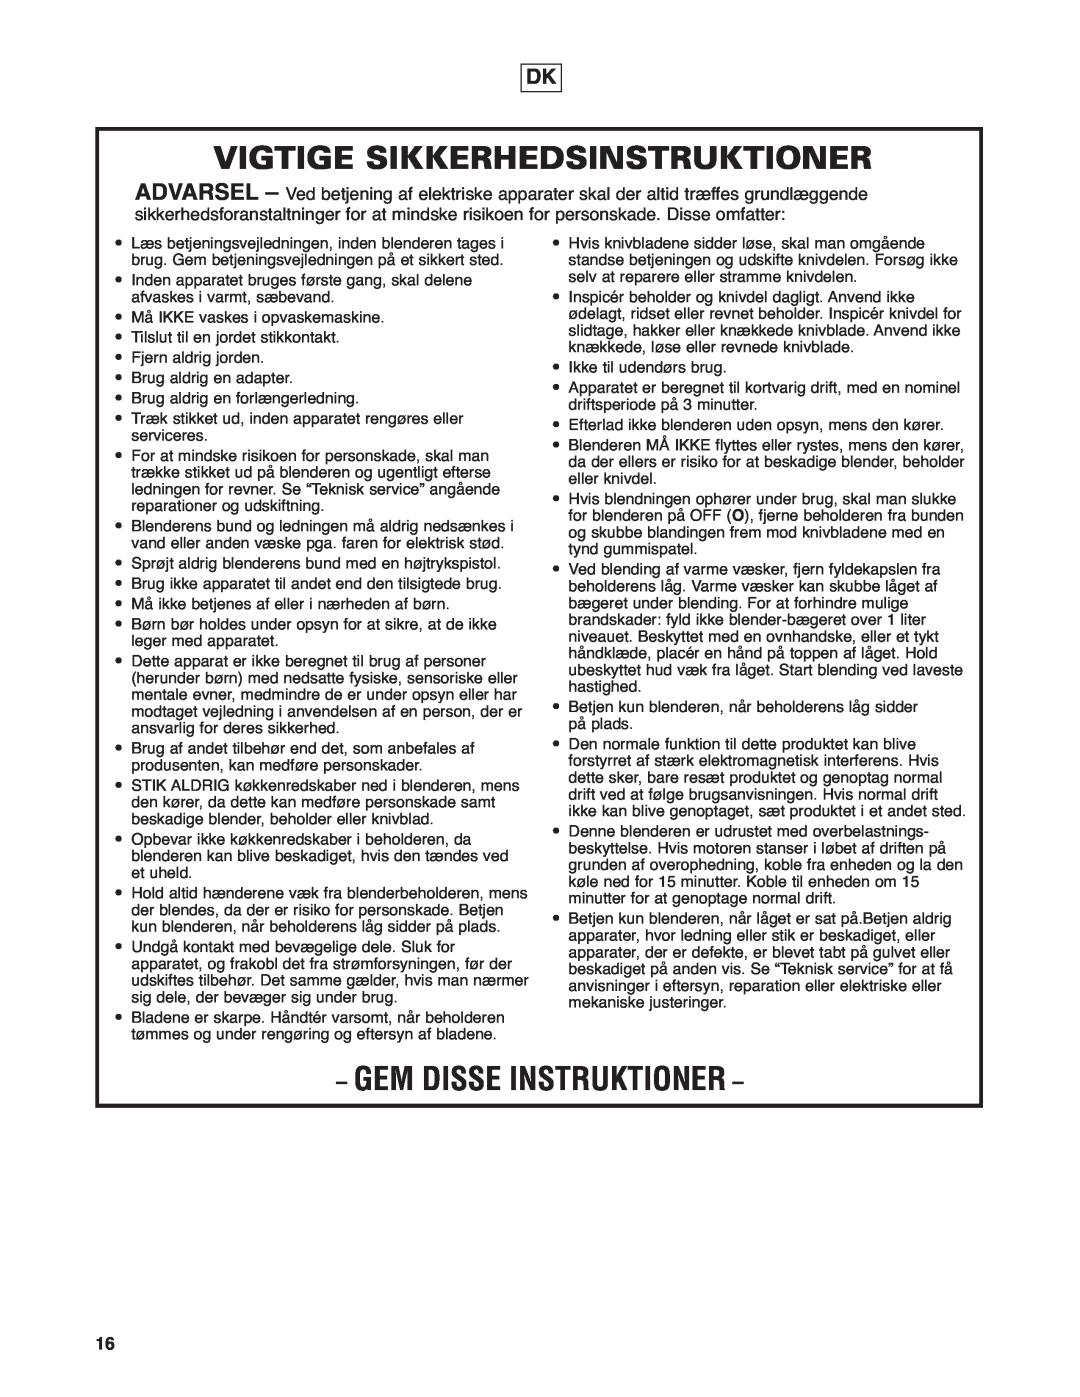 Hamilton Beach HBF400 operation manual Vigtige Sikkerhedsinstruktioner, Gem Disse Instruktioner 